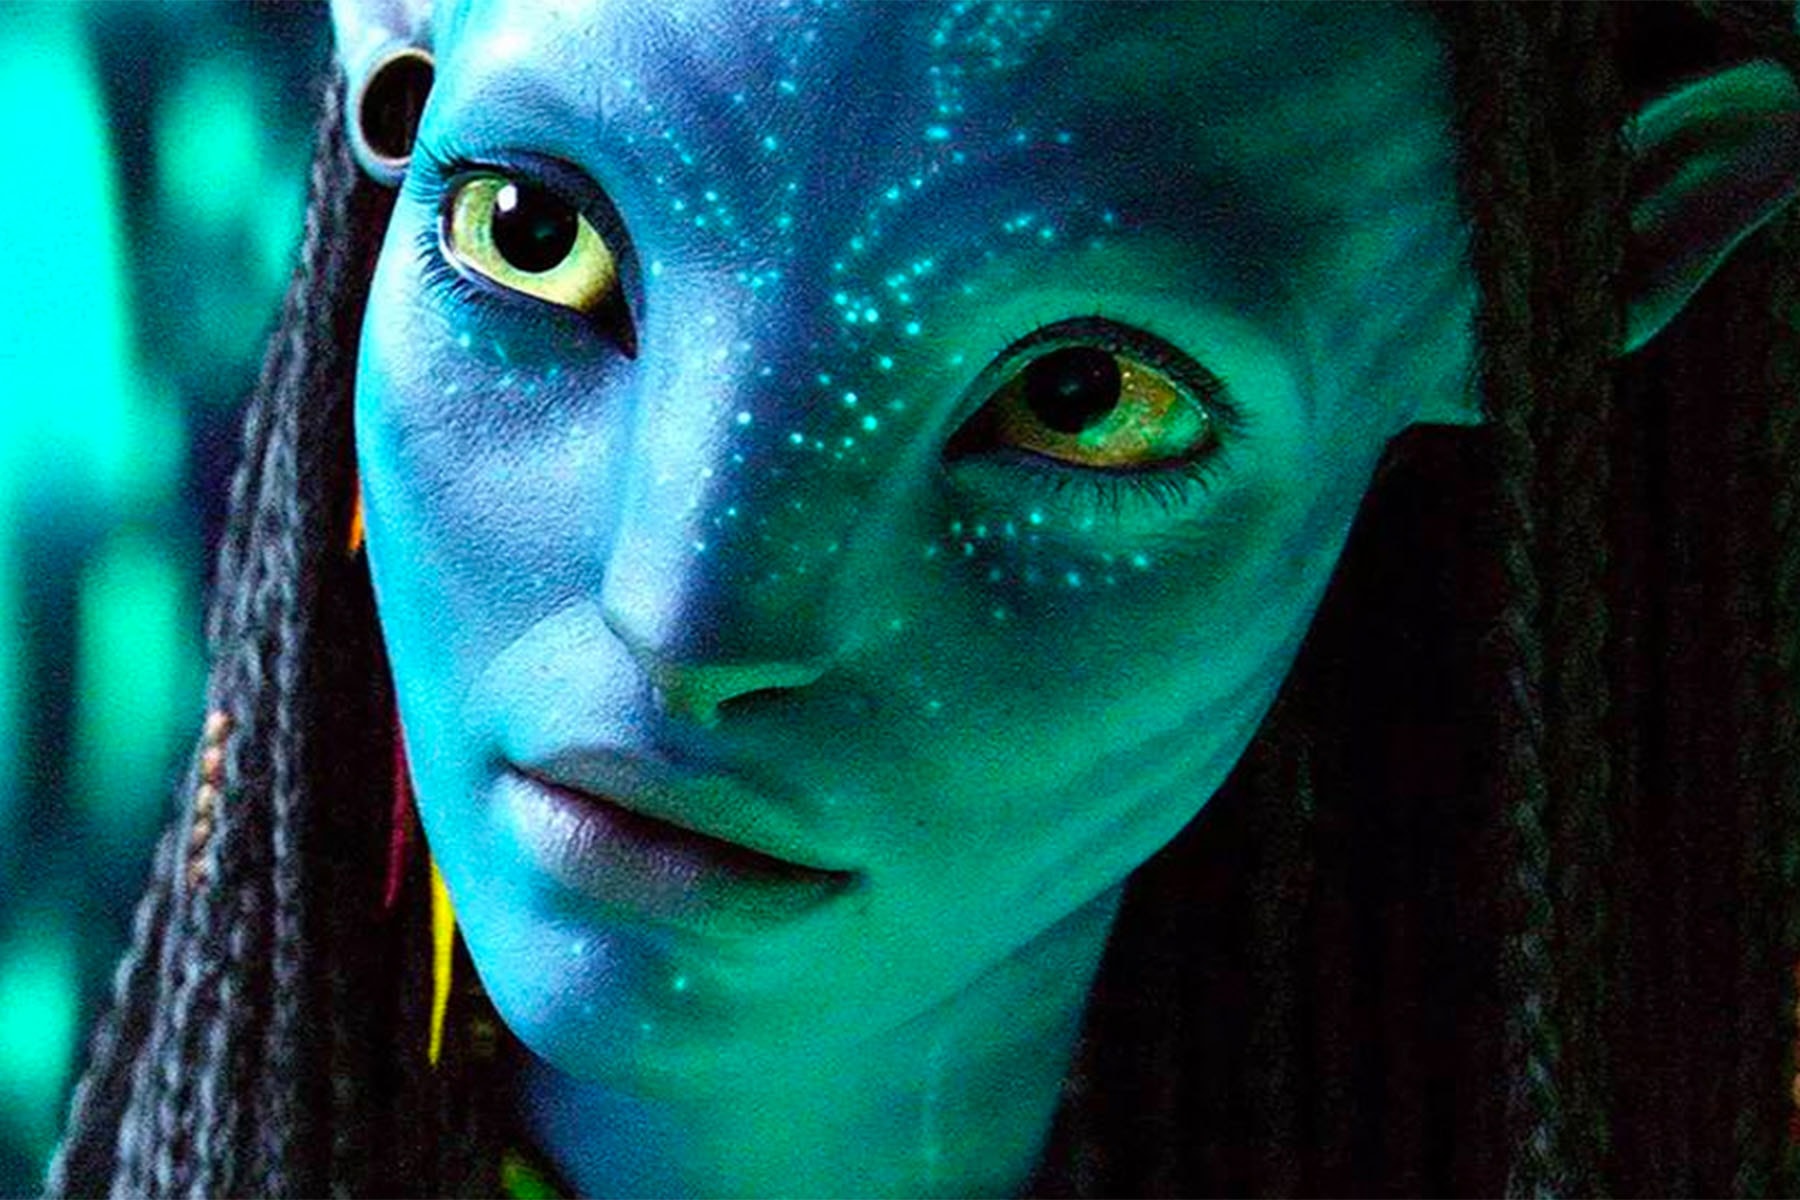 《阿凡達 Avatar》導演 James Cameron 坦承擔心時隔多年推出續集觀眾已不感興趣